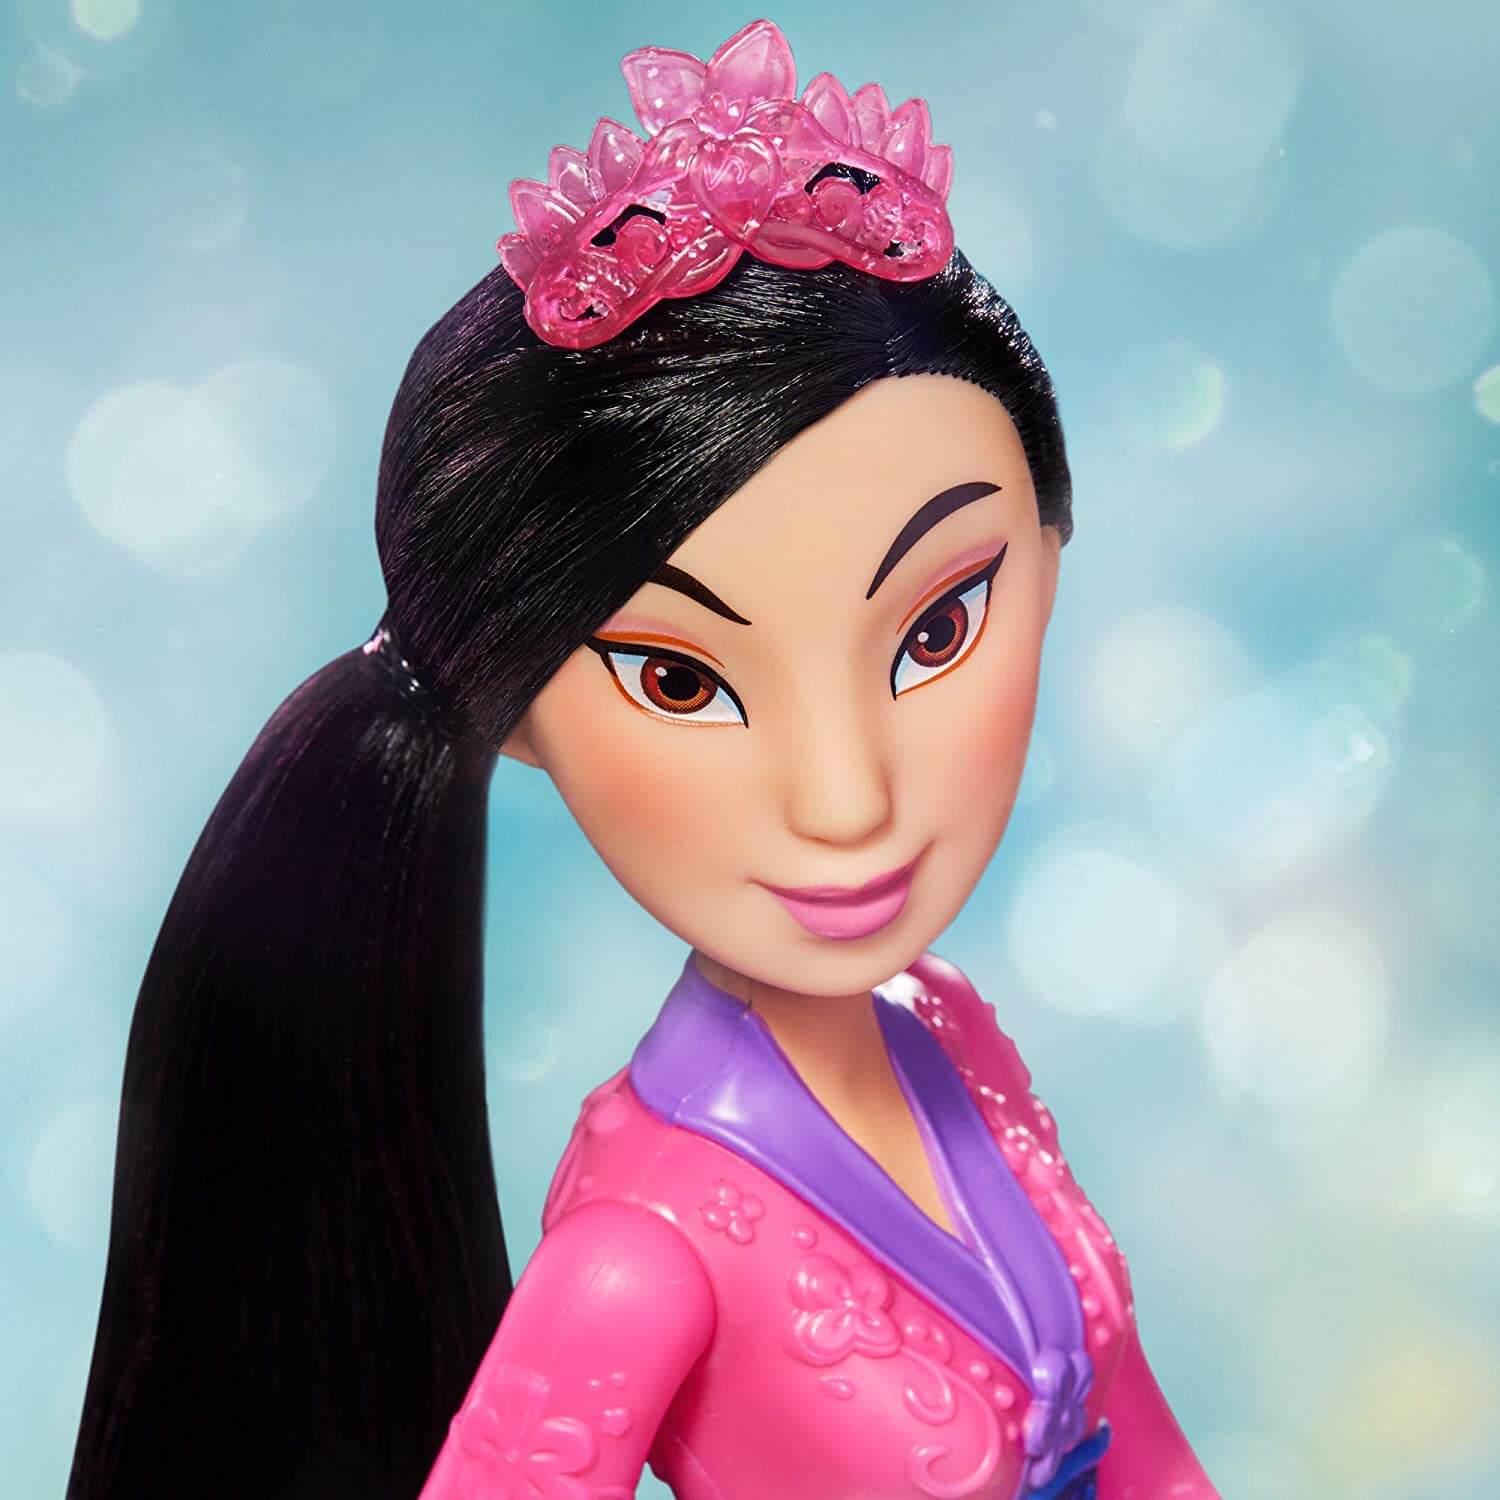 Hasbro Disney Princess Royal Shimmer Mulan Doll